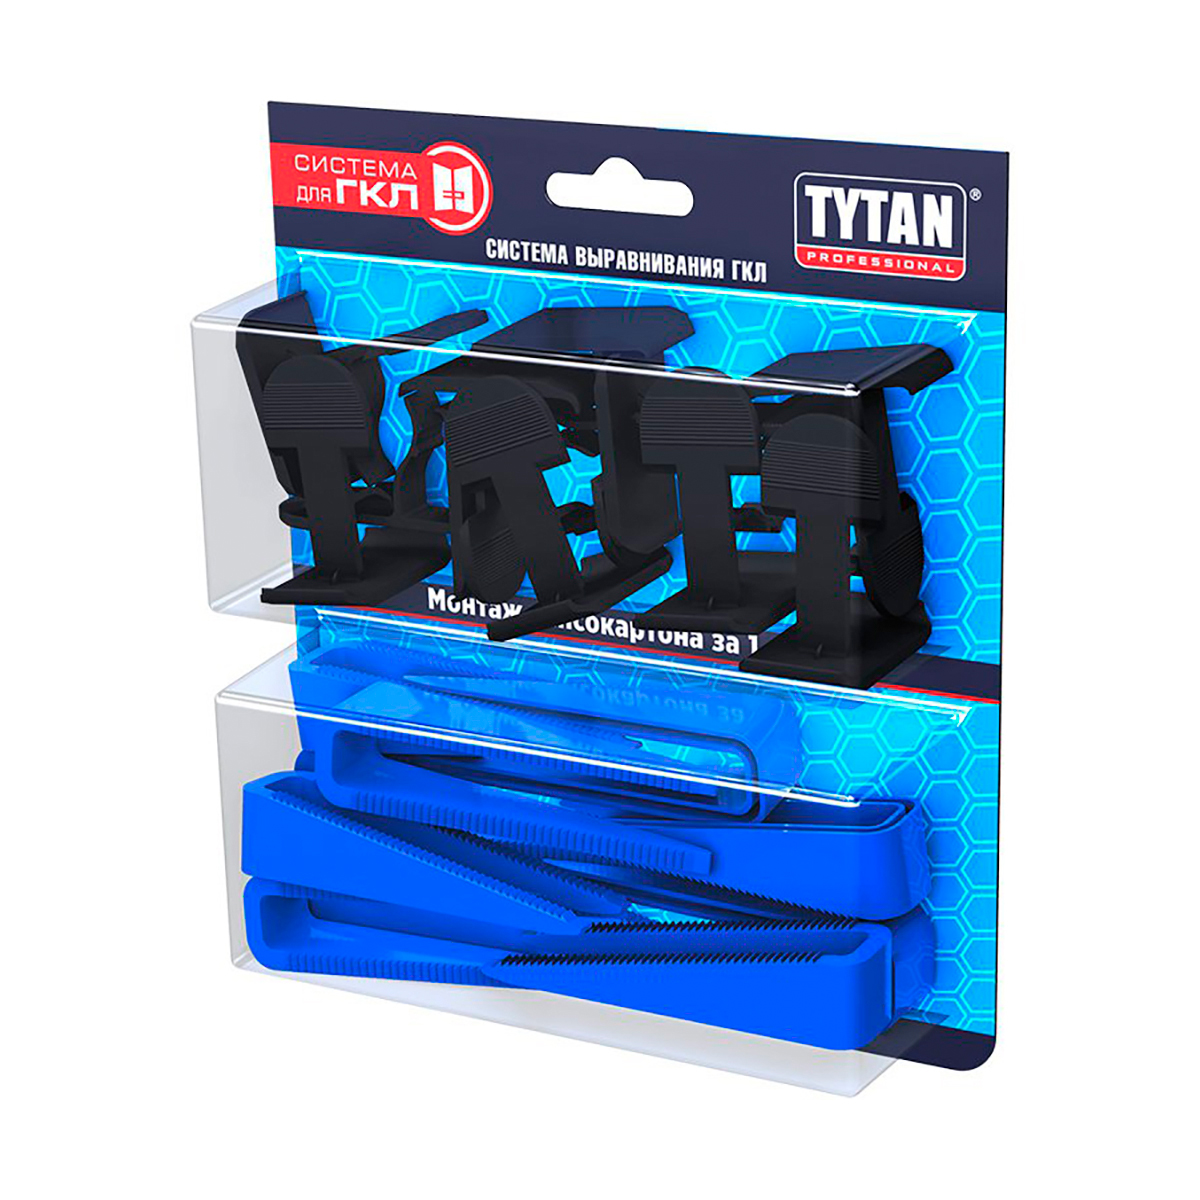 Система выравнивания гипсокартона Tytan Professional, клинья 30 шт + клипсы 30 шт